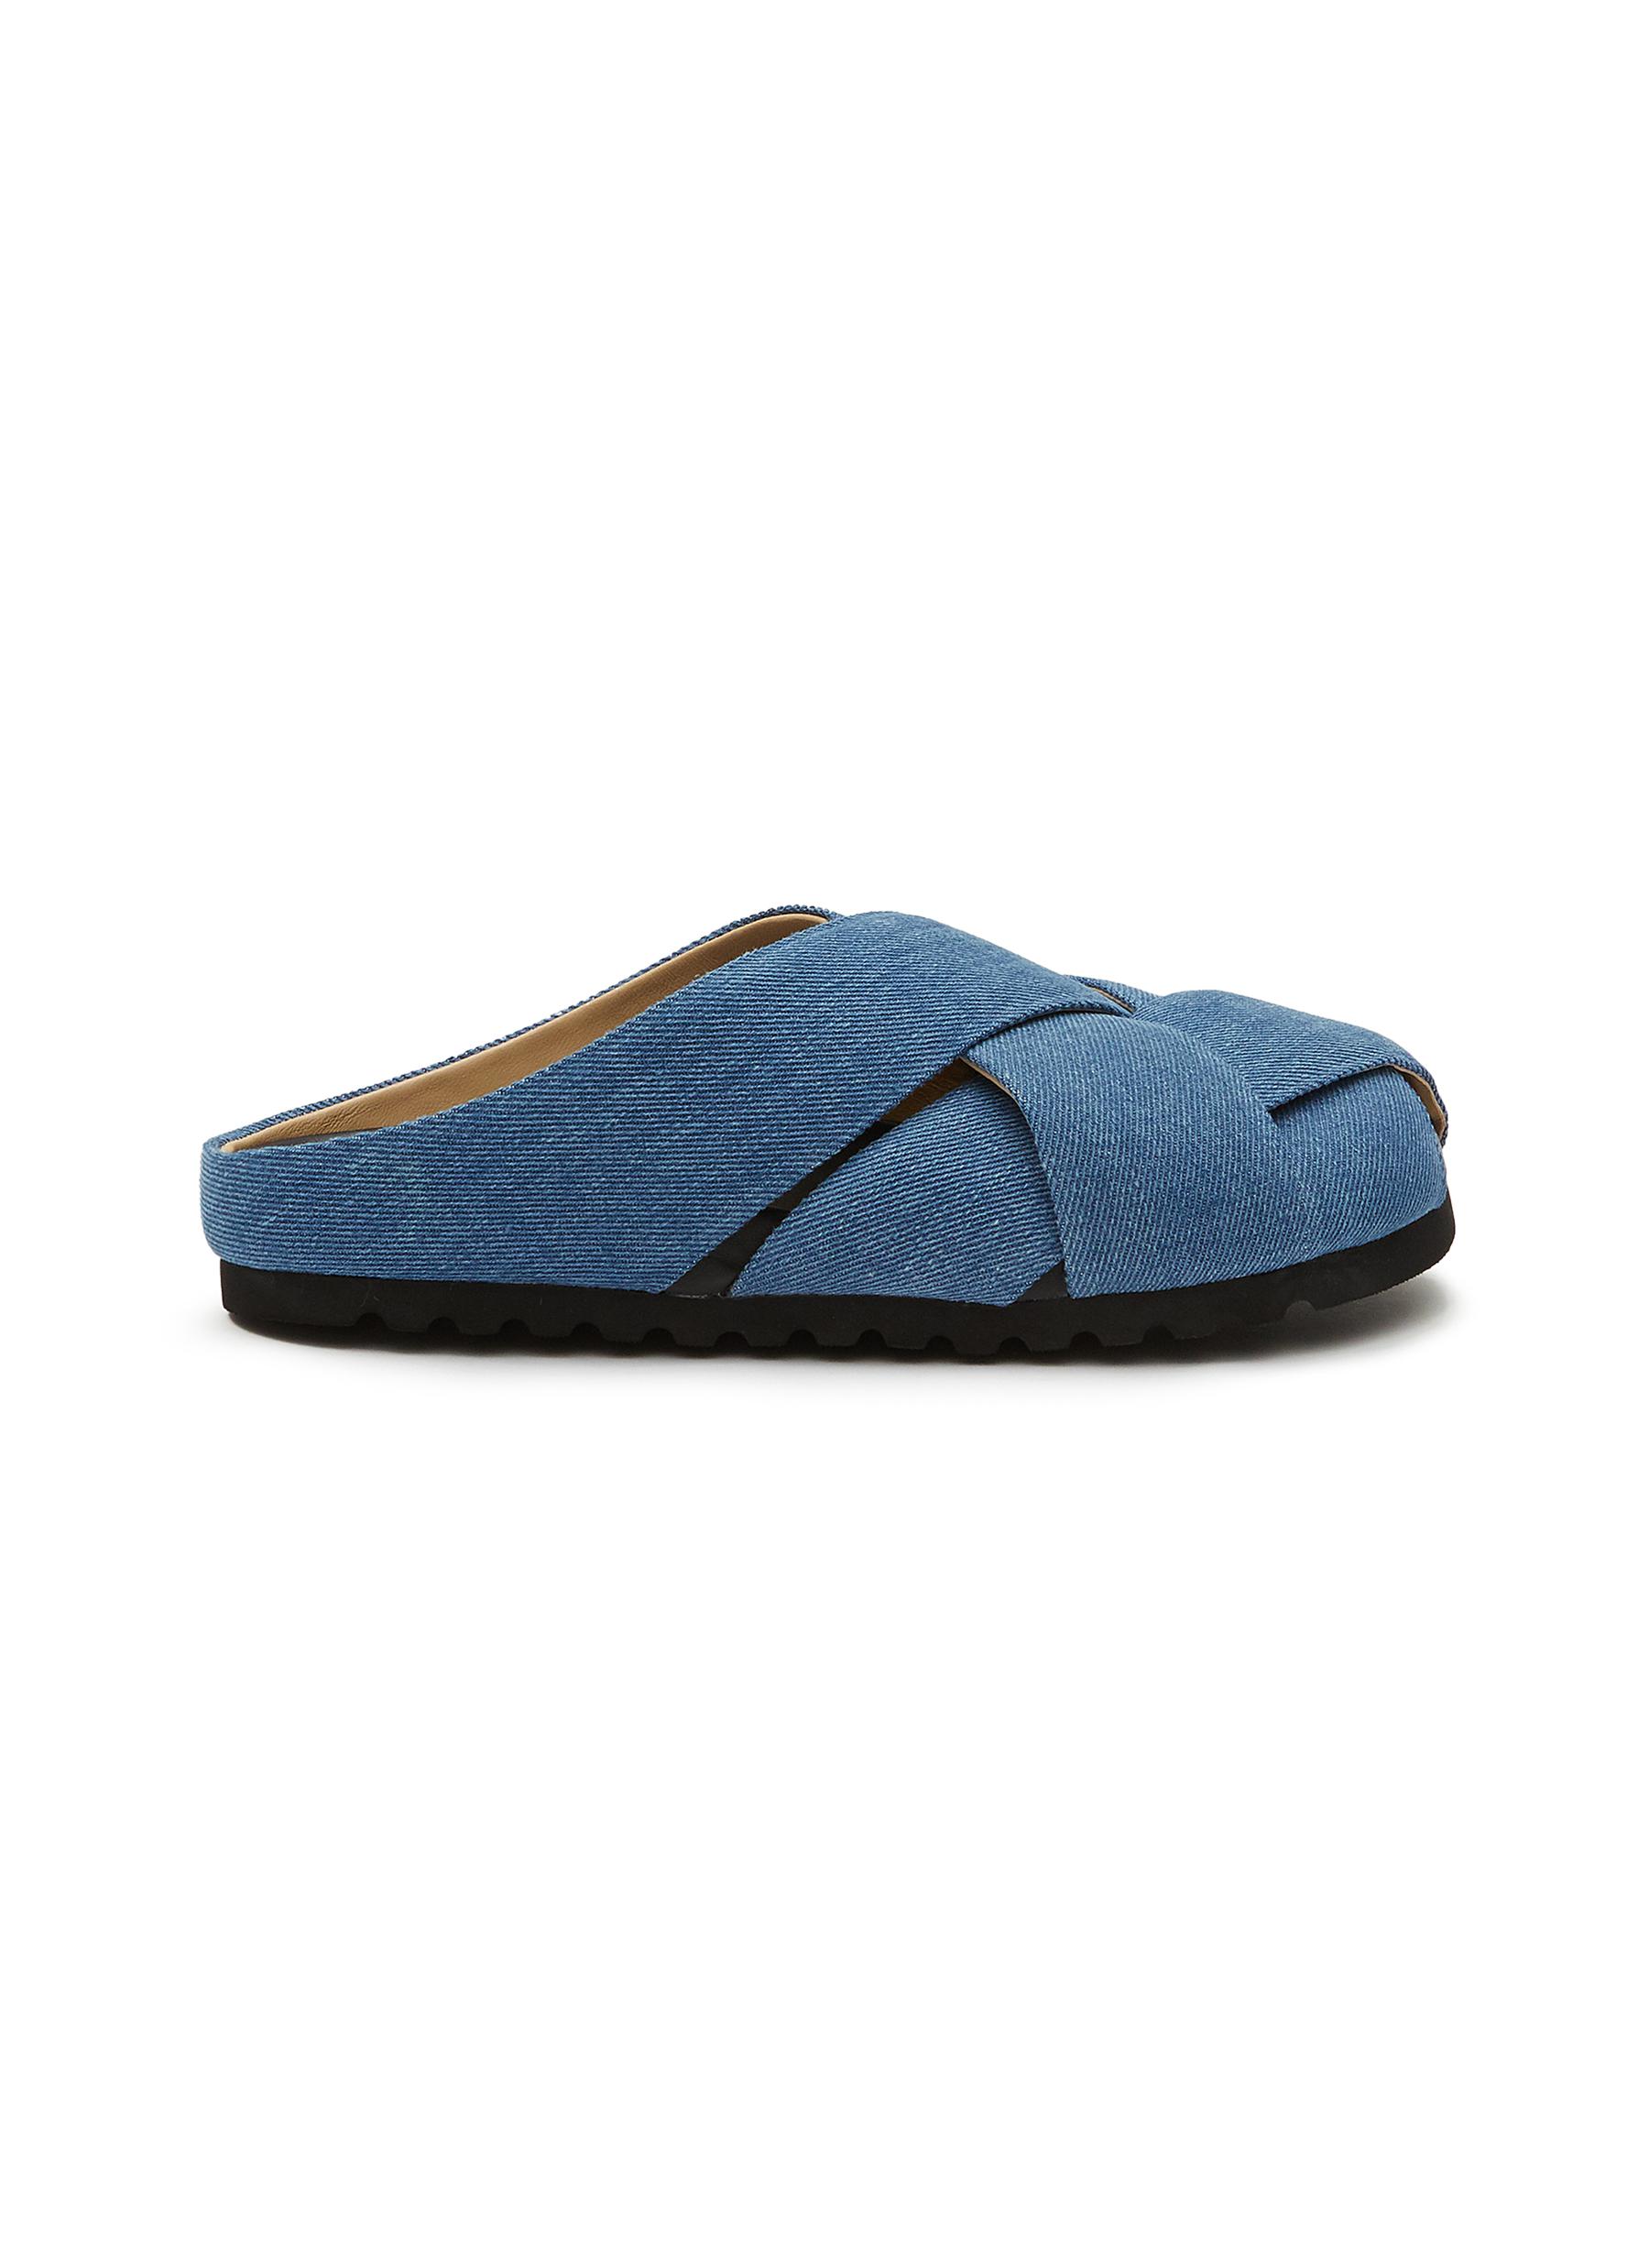 Pedder Red 'celest' Woven Washed Denim Sandals In Blue